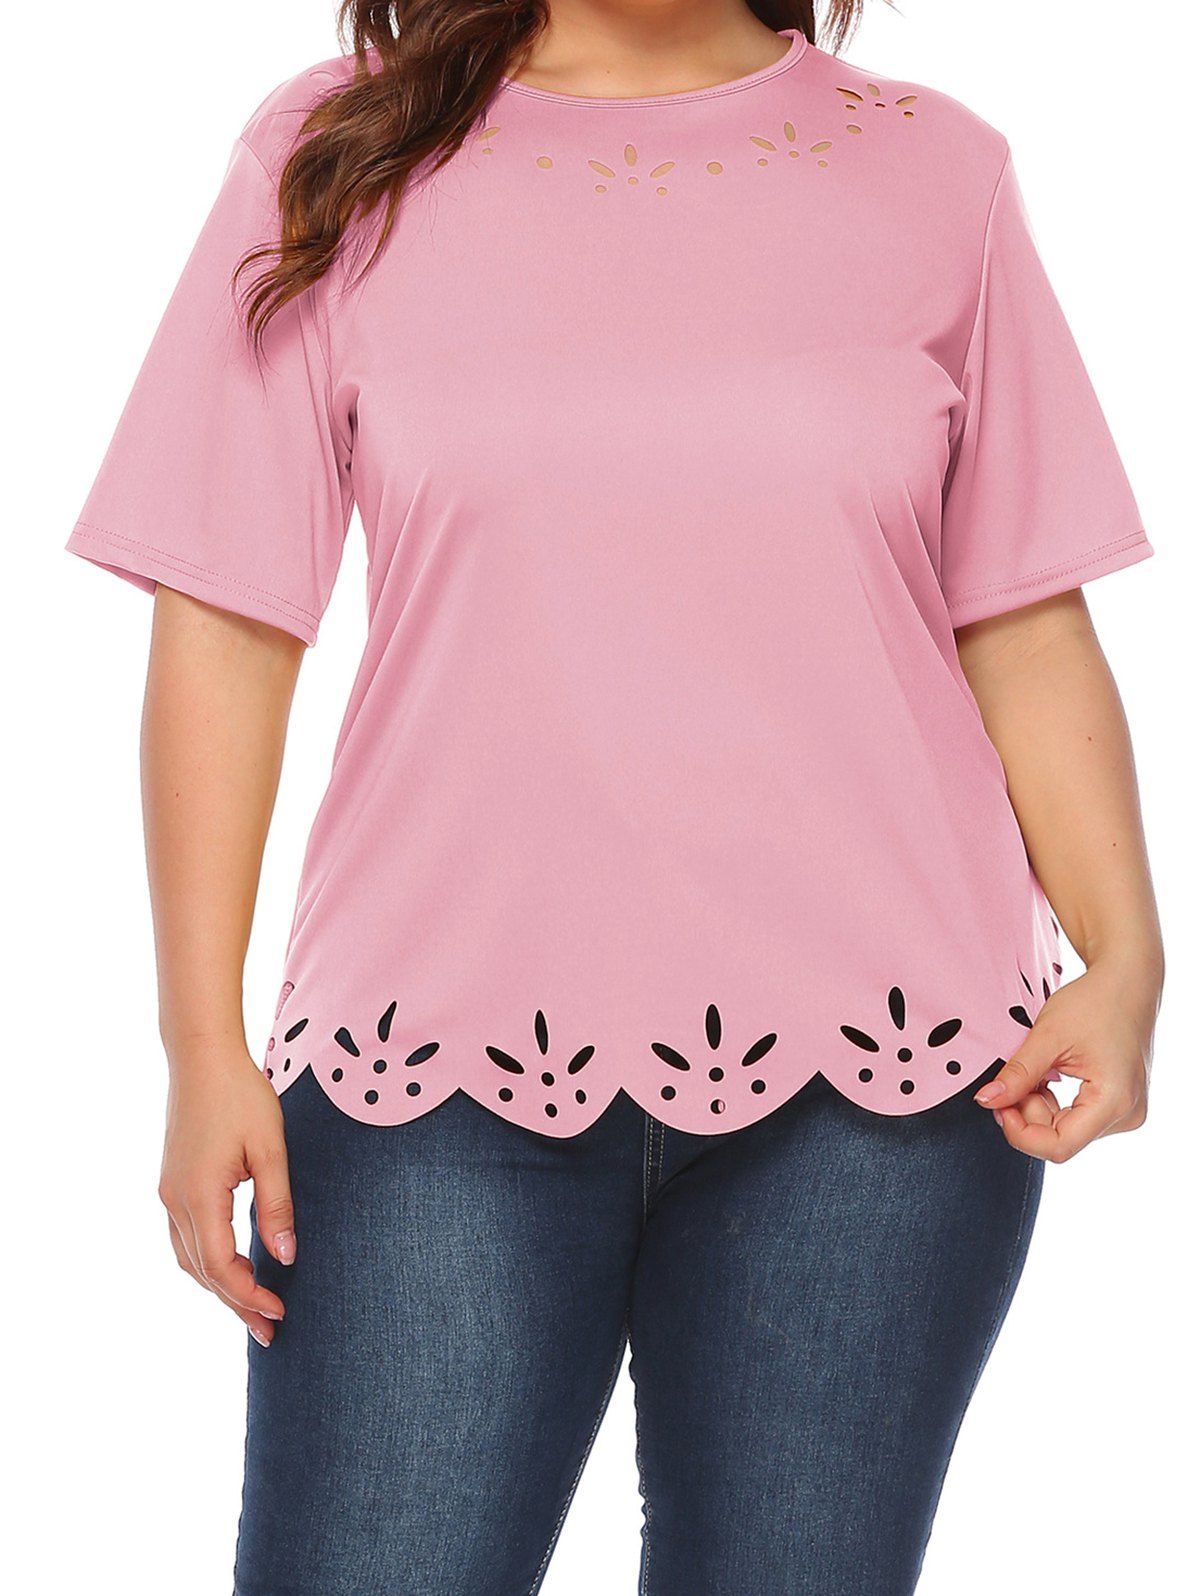 T-shirt Décontracté Festonné Découpé en Couleur Unie de Grande Taille - Rose clair 2XL